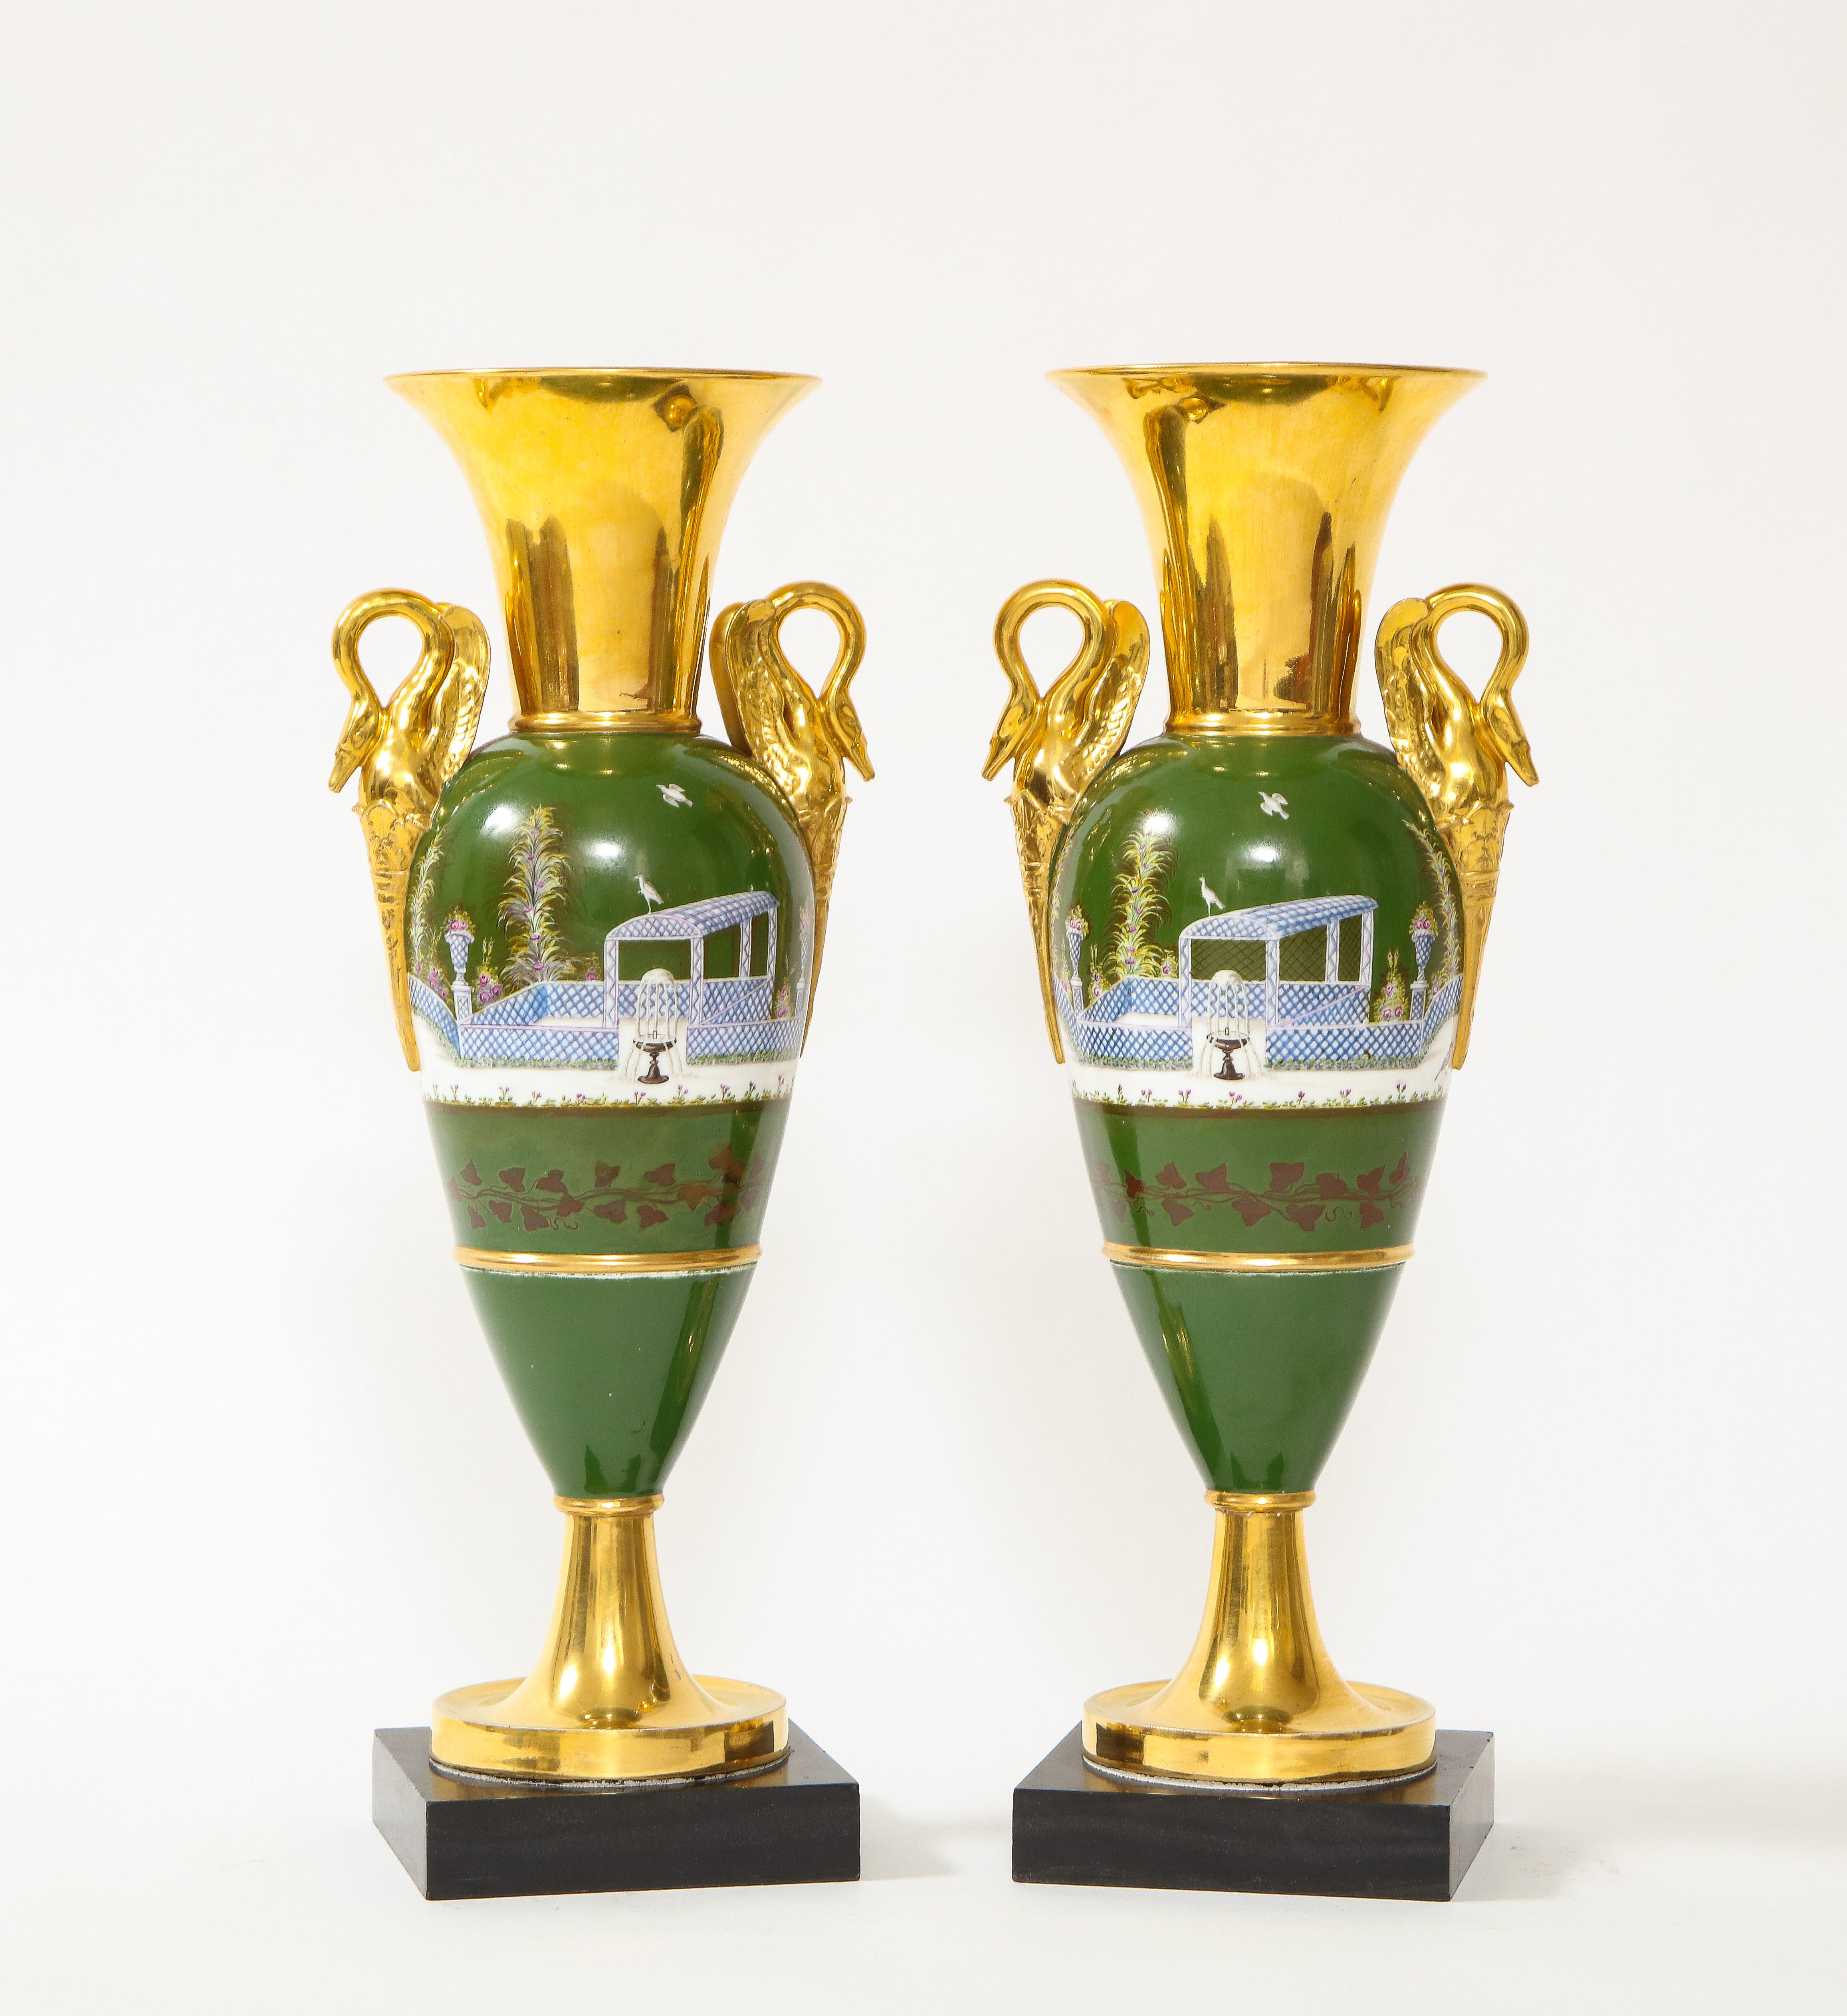 Paire de vases à anse de cygne en porcelaine de Paris d'époque Empire du XIXe siècle. Chacun d'entre eux est magnifiquement peint à la main sur un fond vert et orné d'accents peints à l'or fin 24K autour du cou, des poignées et des bases. Les vases